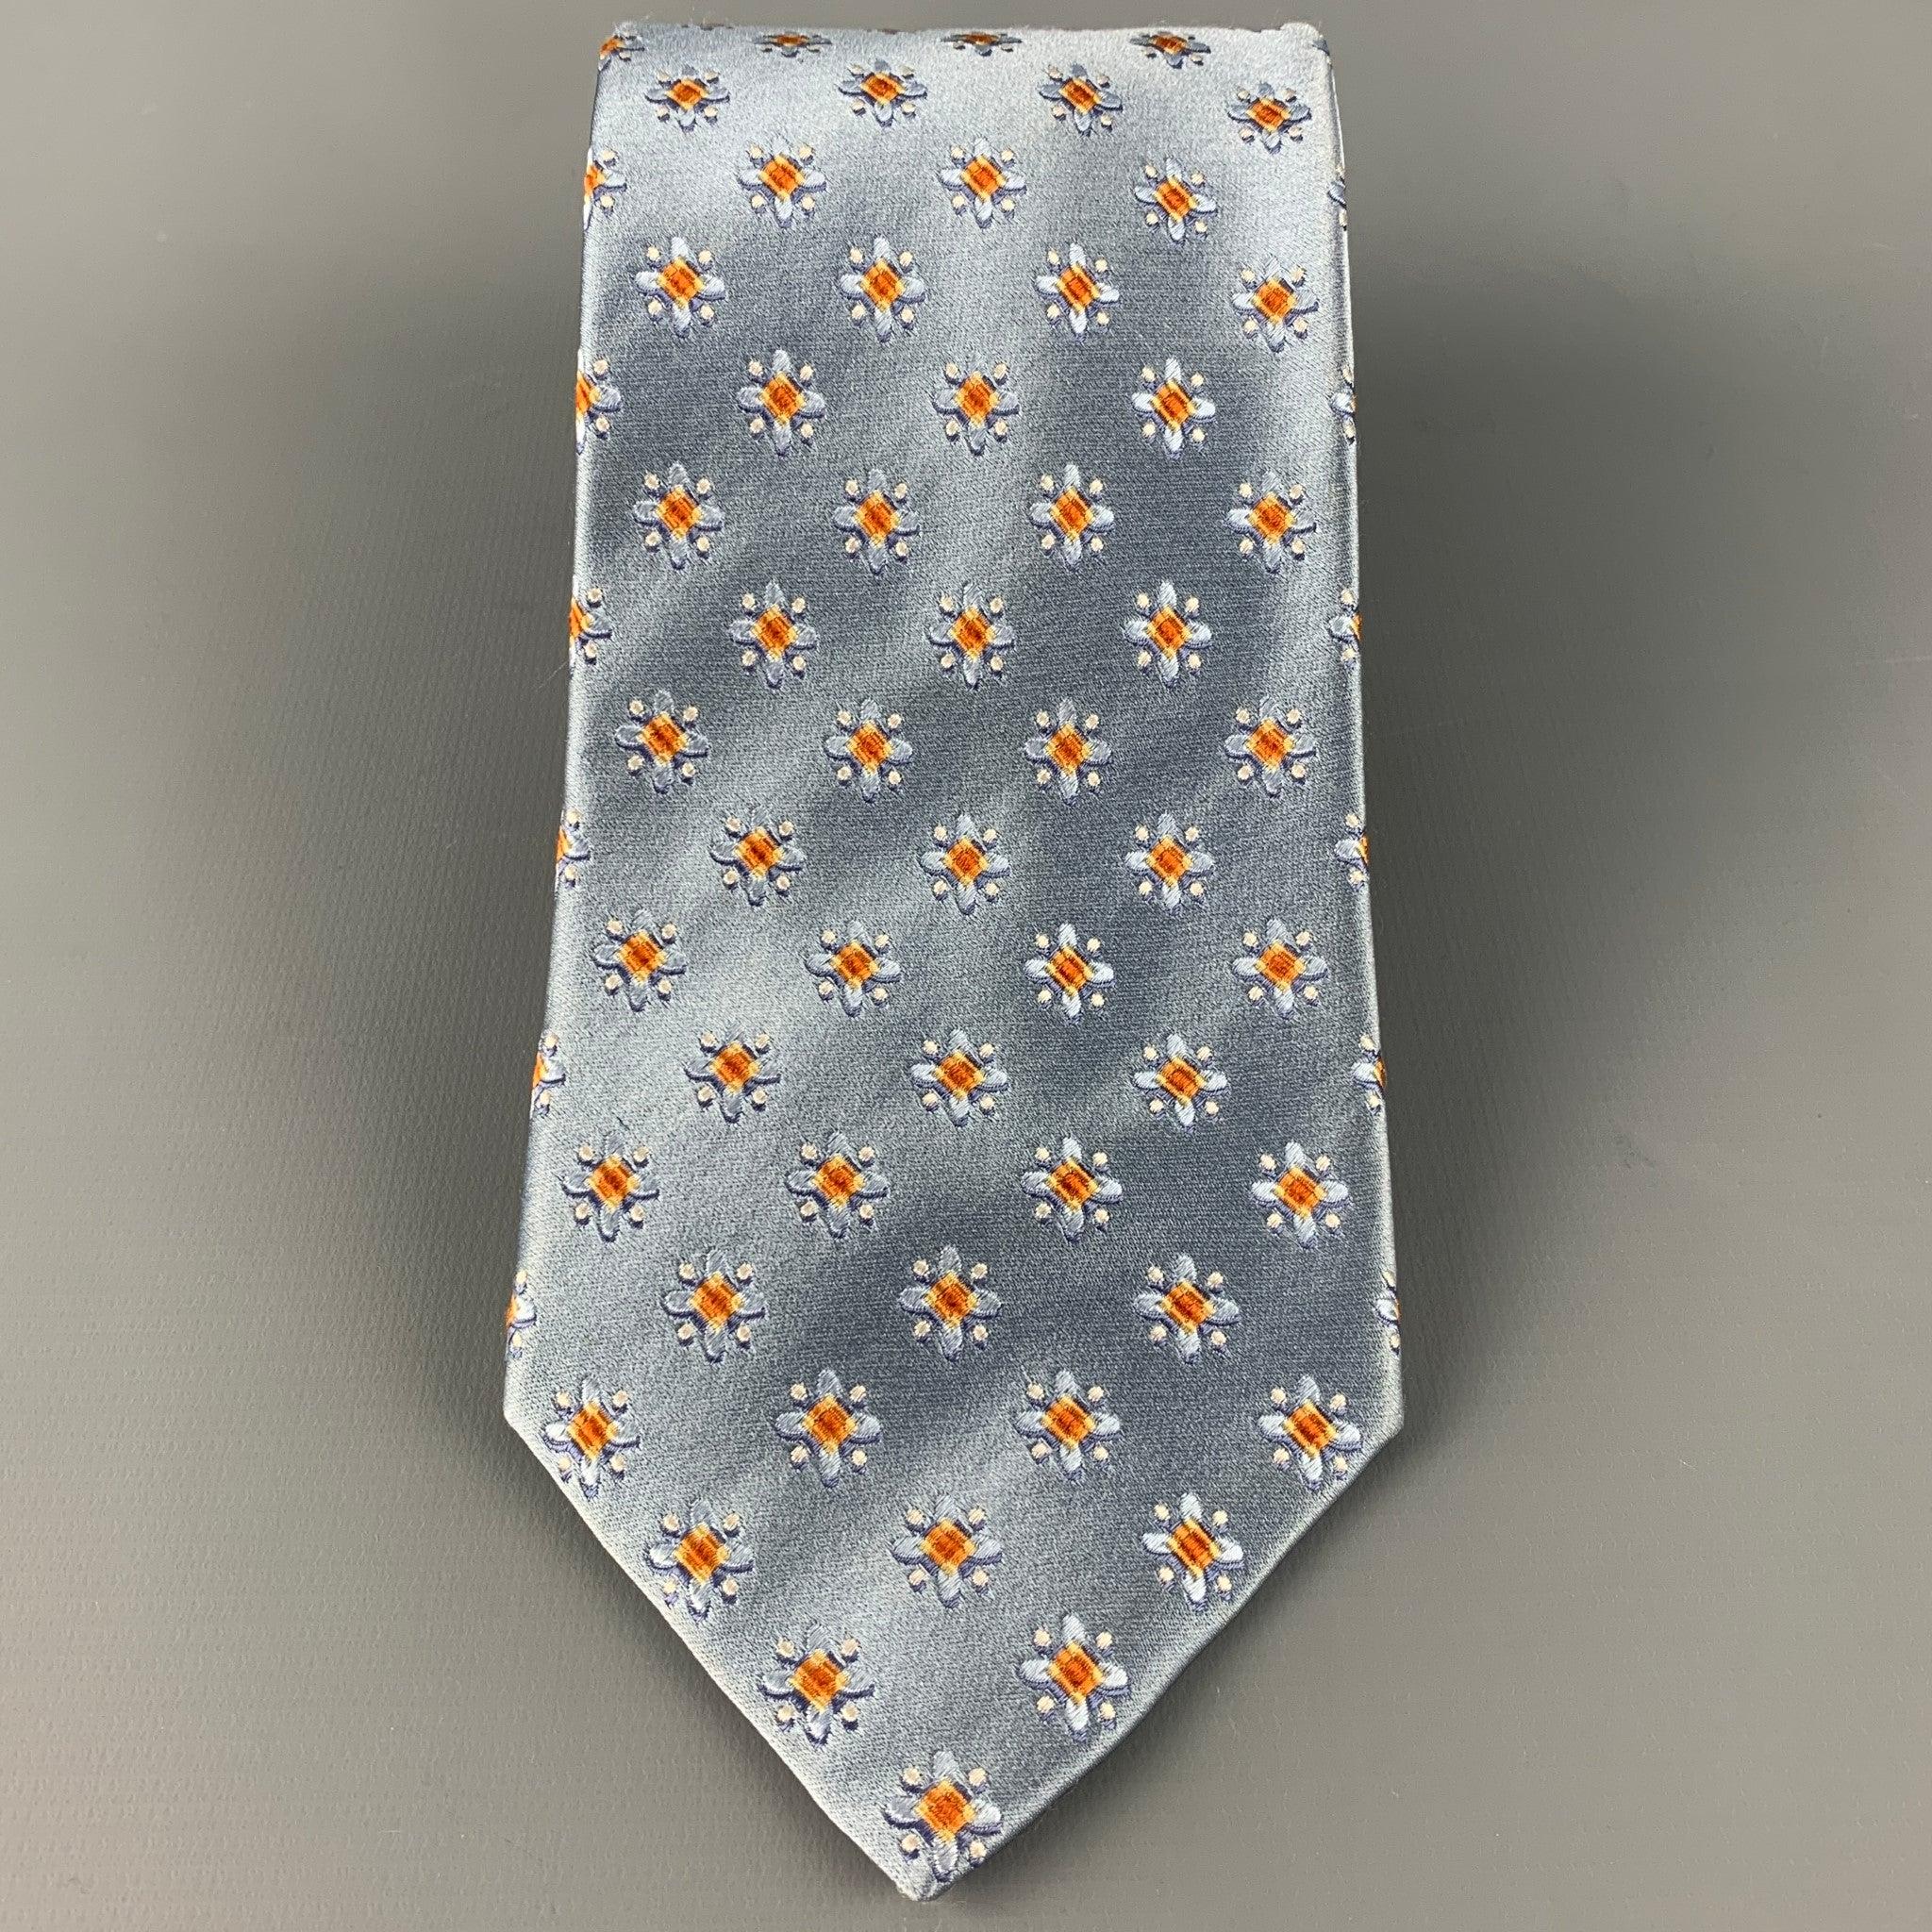 ERMENEGILDO ZEGNA
Krawatte aus blauem Seidensatin mit einem abstrakten Blumenmuster in Orange. Made in Italy. sehr guter gebrauchter Zustand. 

Abmessungen: 
  Breite: 3. Zoll Länge: 60 Zoll 
  
  
 
Sui Generis-Referenz: 126573
Kategorie: